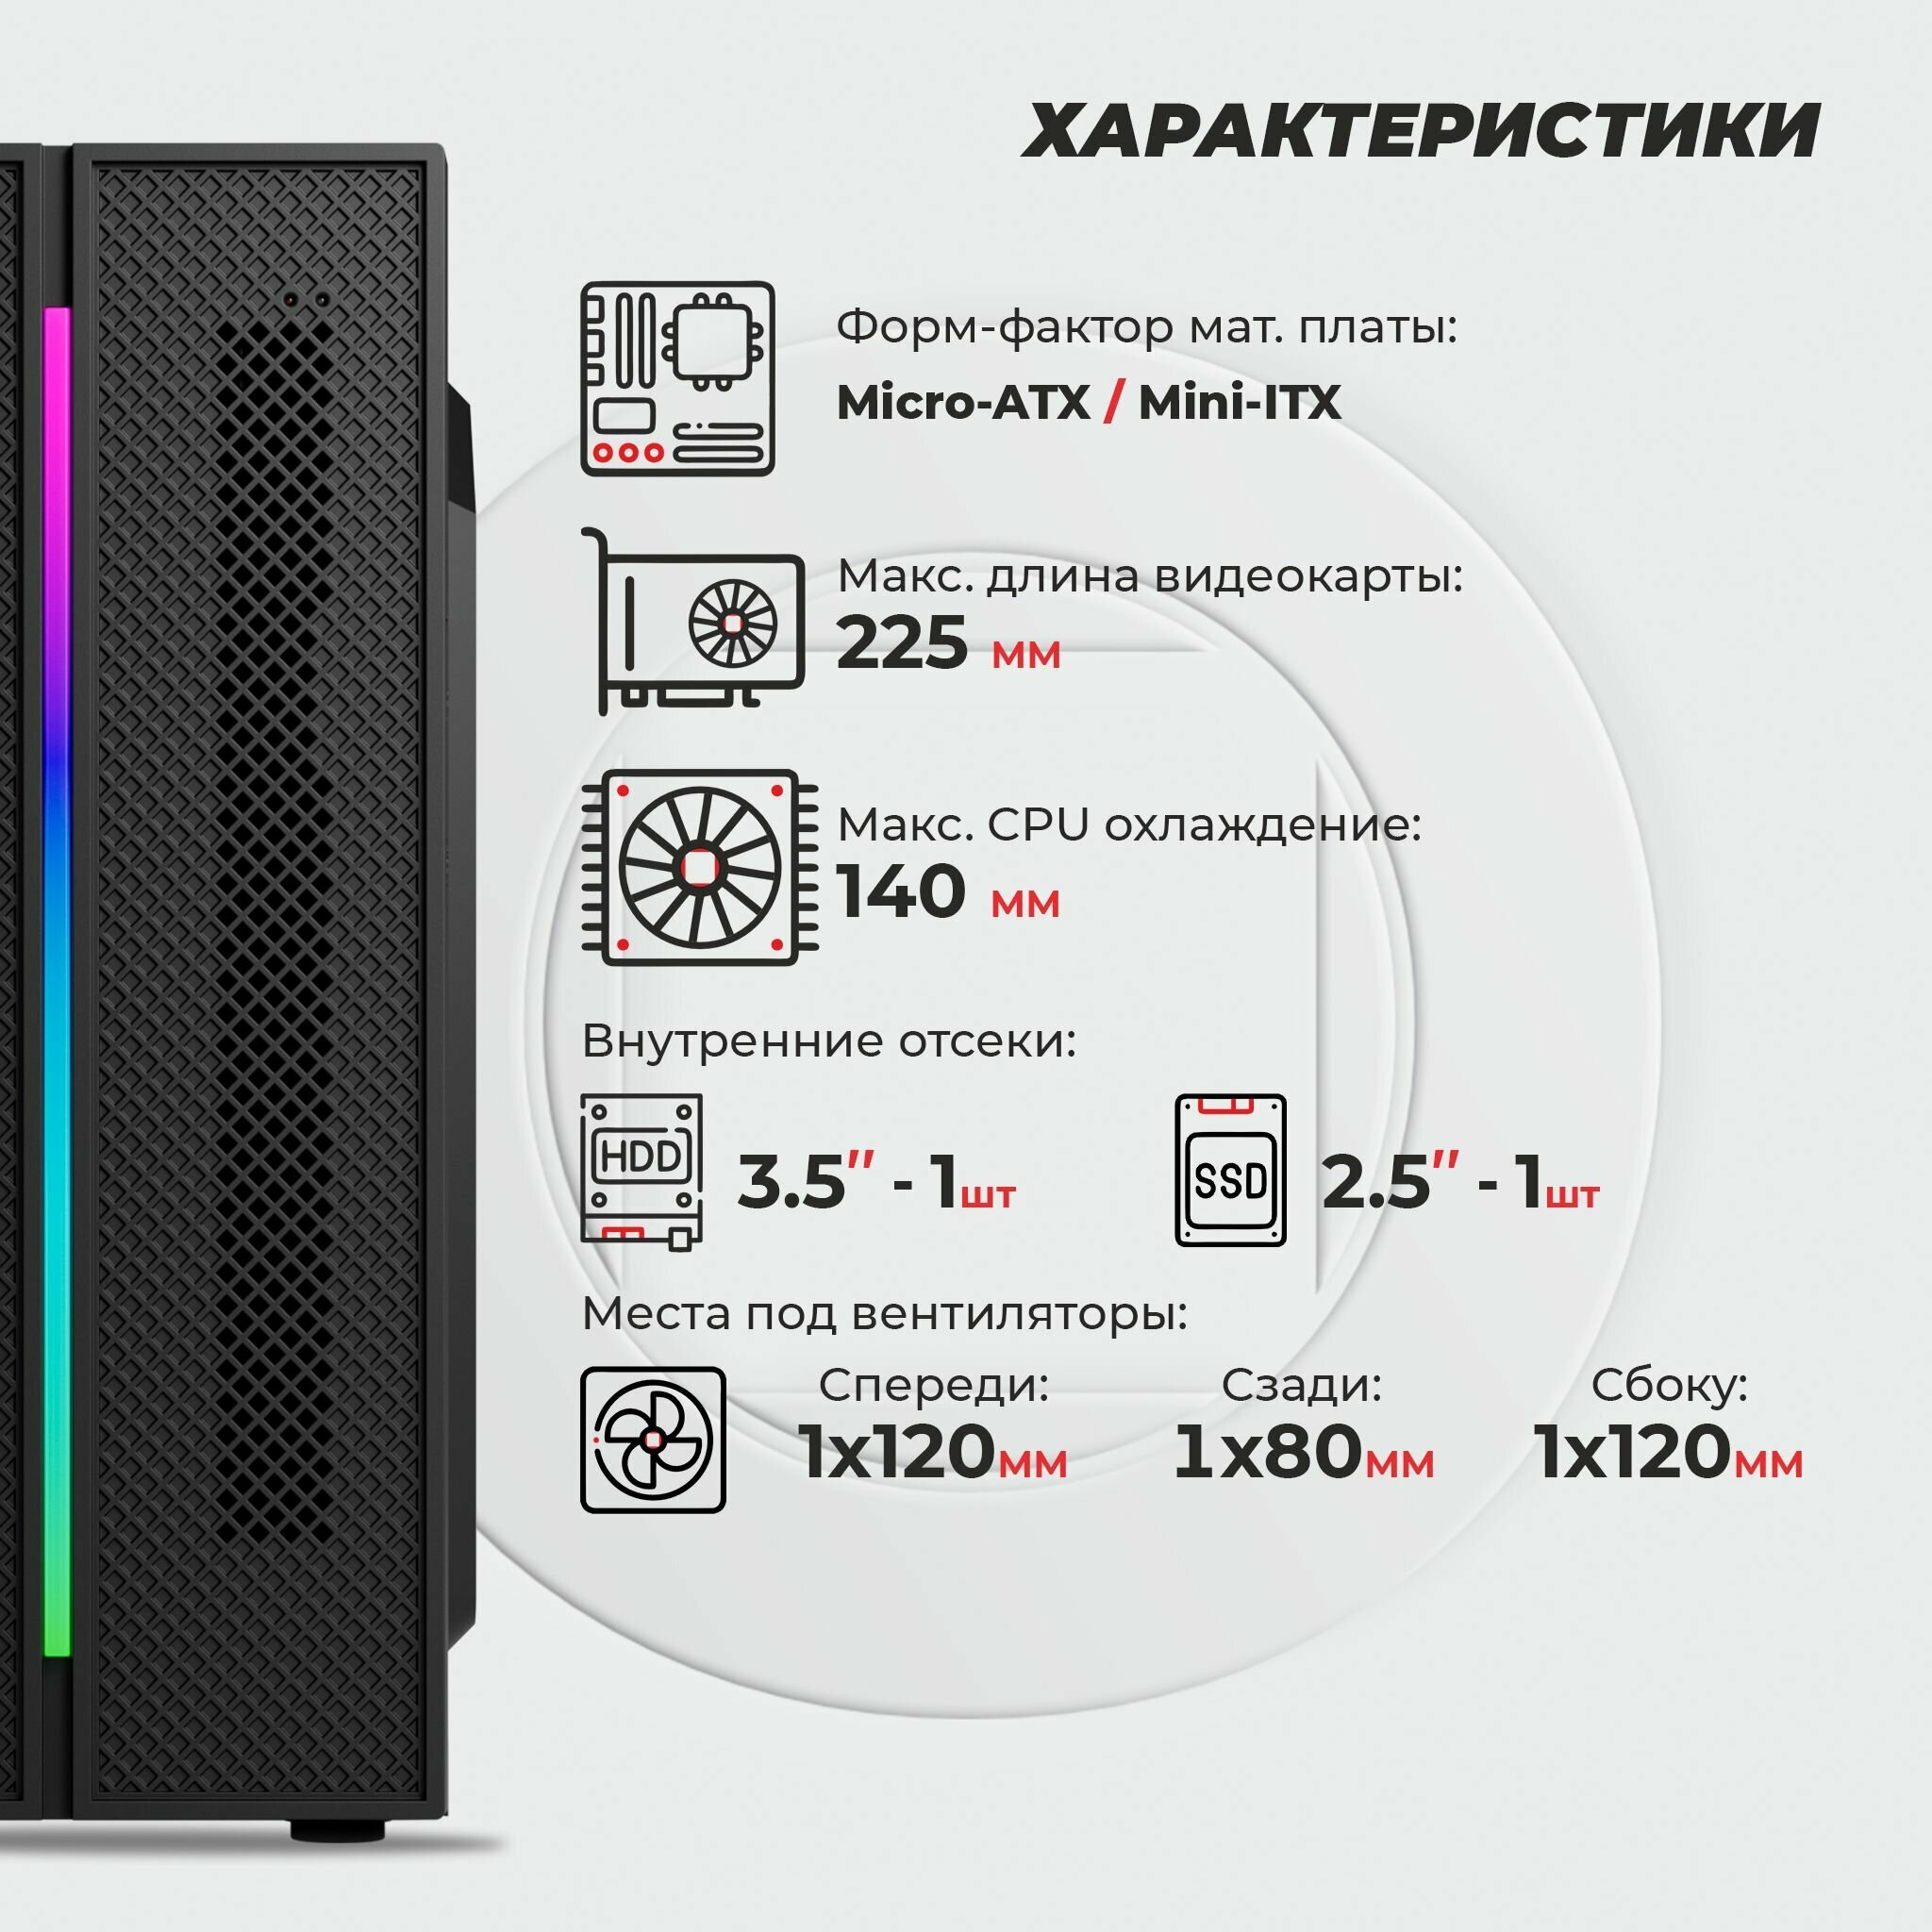 Корпус Prime Box К705 RGB (2 - USB 3.0, 1 - USB 2.0) черный Micro-ATX, Mini-ITX